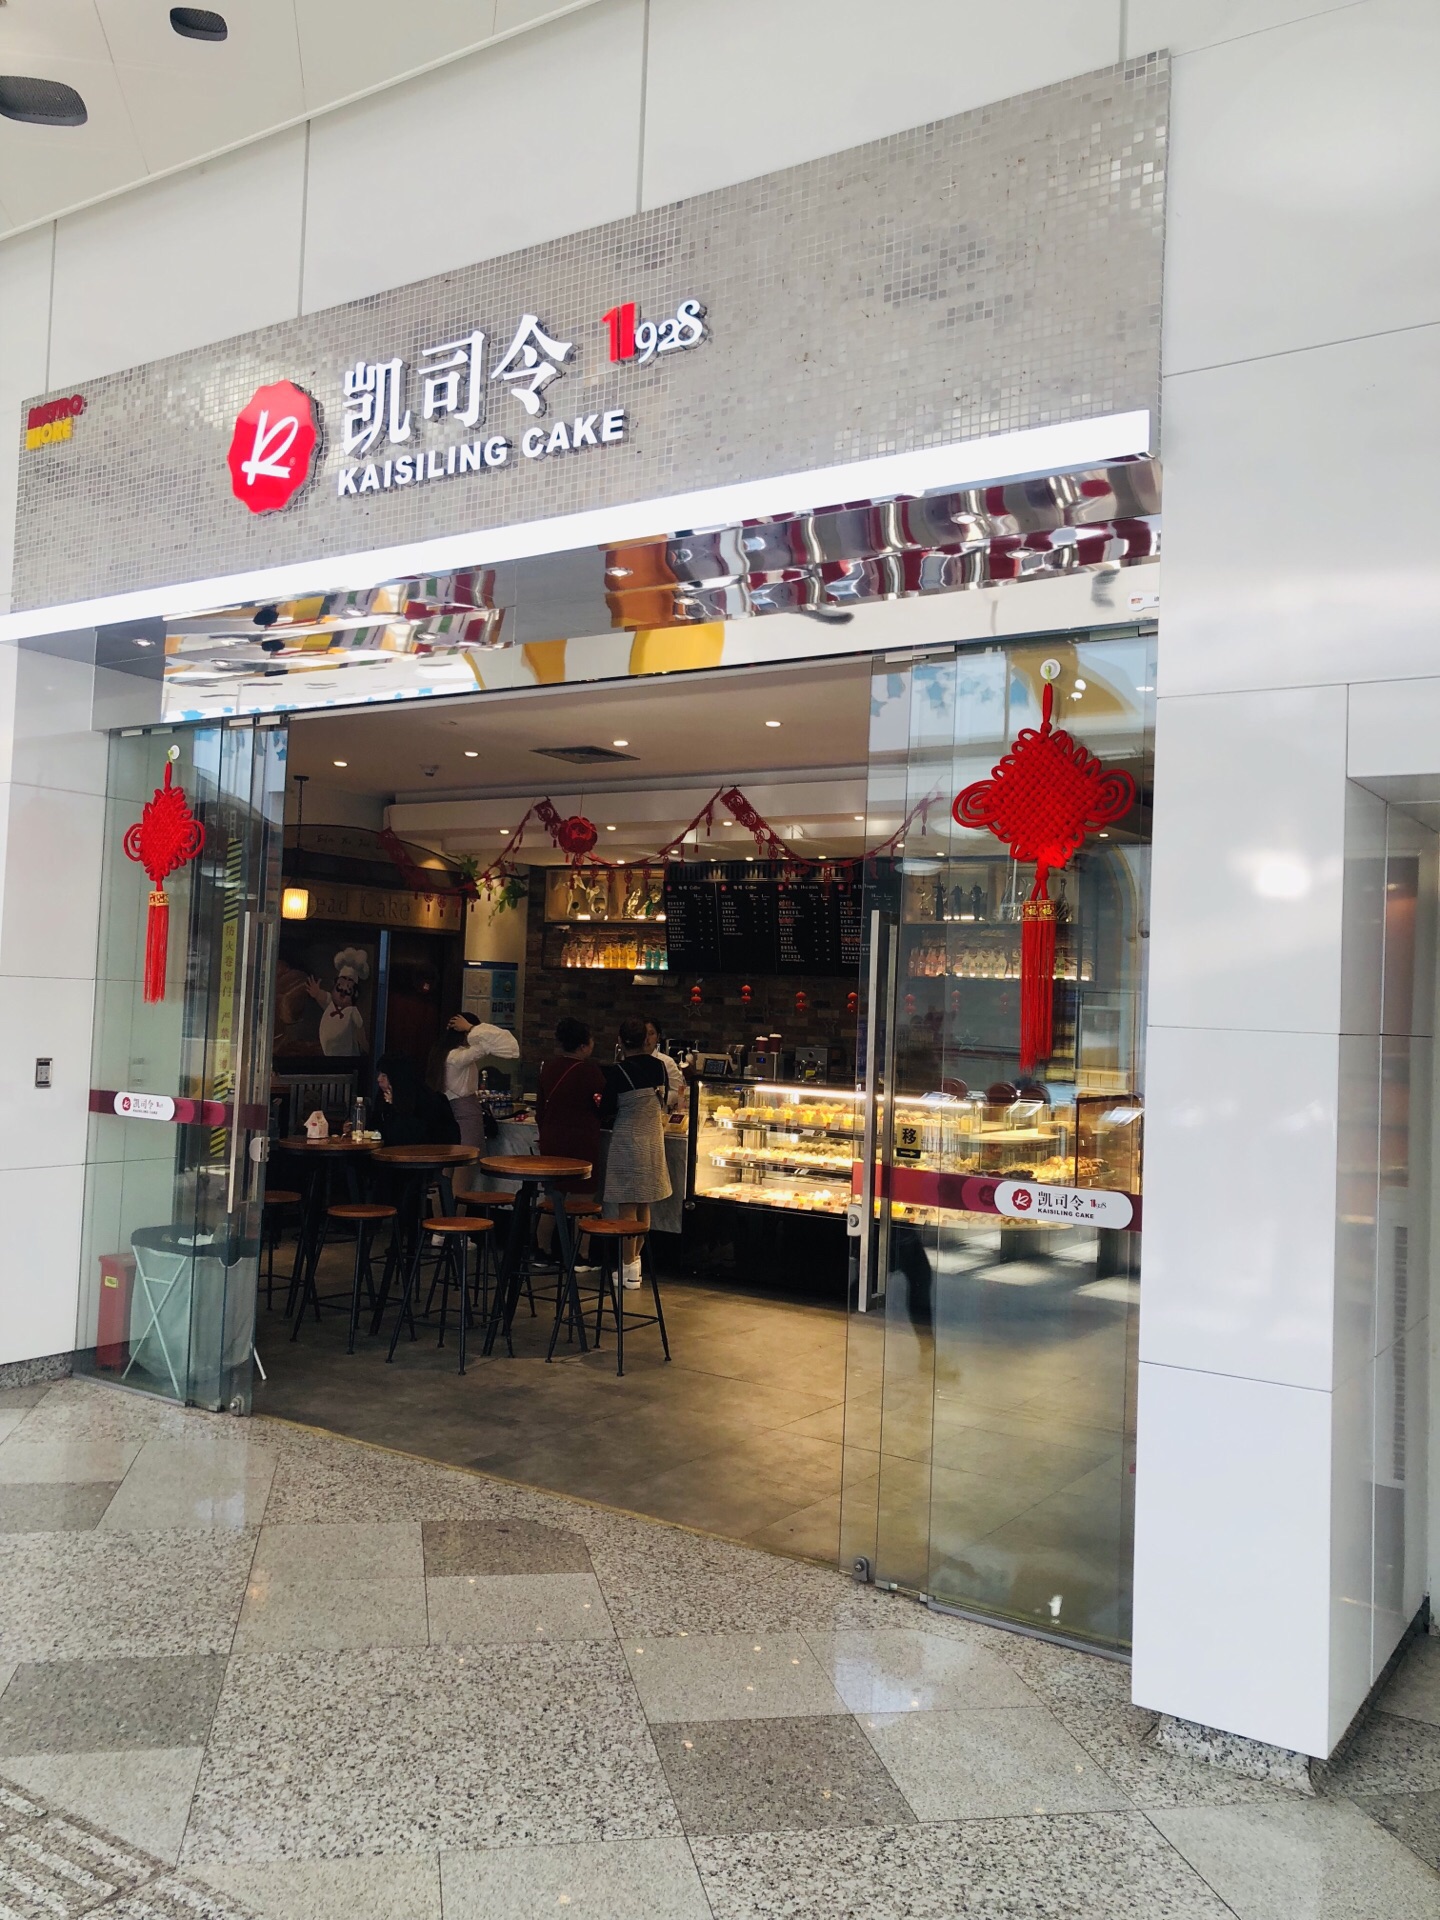 2022凯司令西点房(南京西路店)美食餐厅,对于凯司令毫无抵抗能力，尤...【去哪儿攻略】